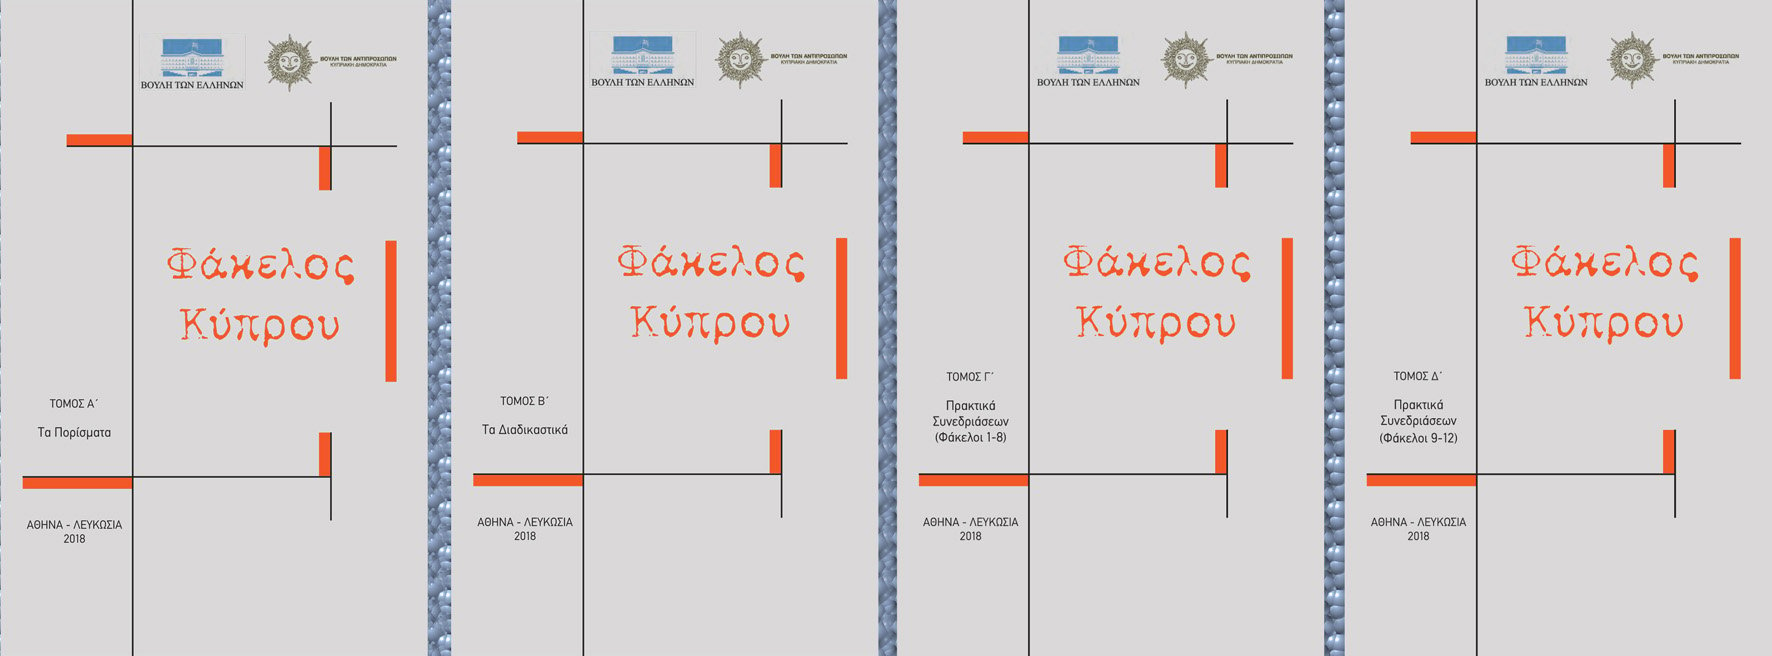 Ο πέμπτος και ο έκτος τόμος του «Φάκελου Κύπρου», αναρτημένοι στην ιστοσελίδα της Βουλής - 18/3/2019